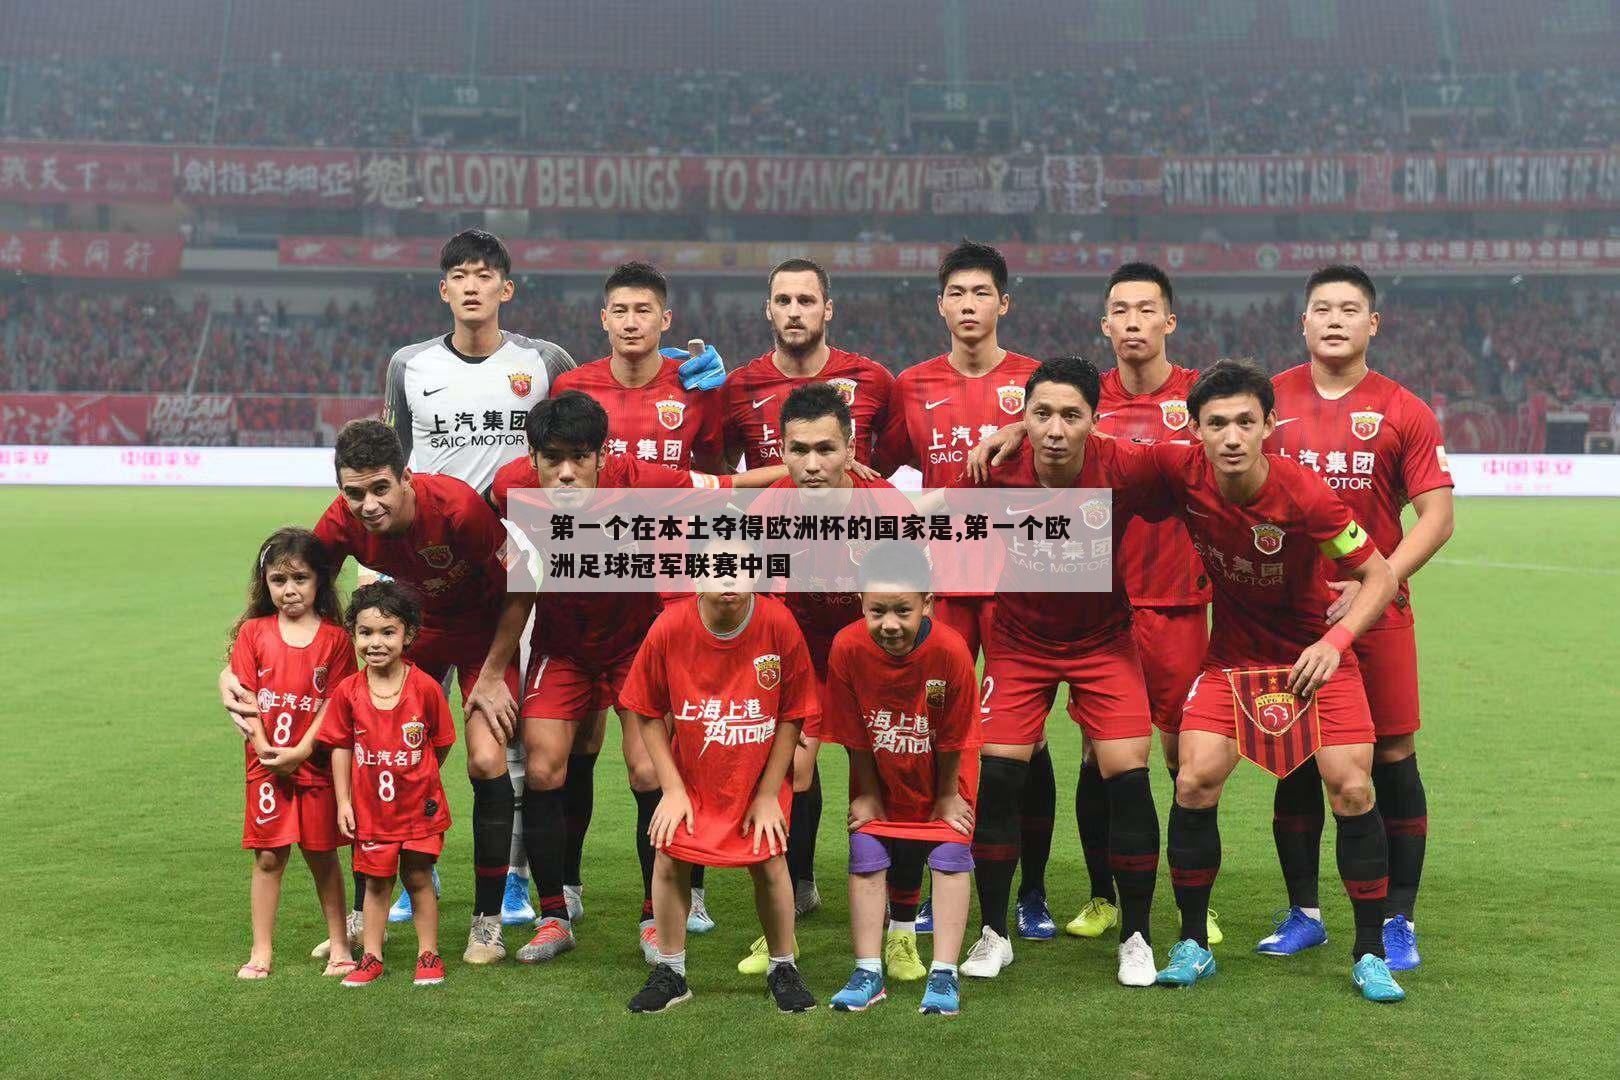 第一个在本土夺得欧洲杯的国家是,第一个欧洲足球冠军联赛中国